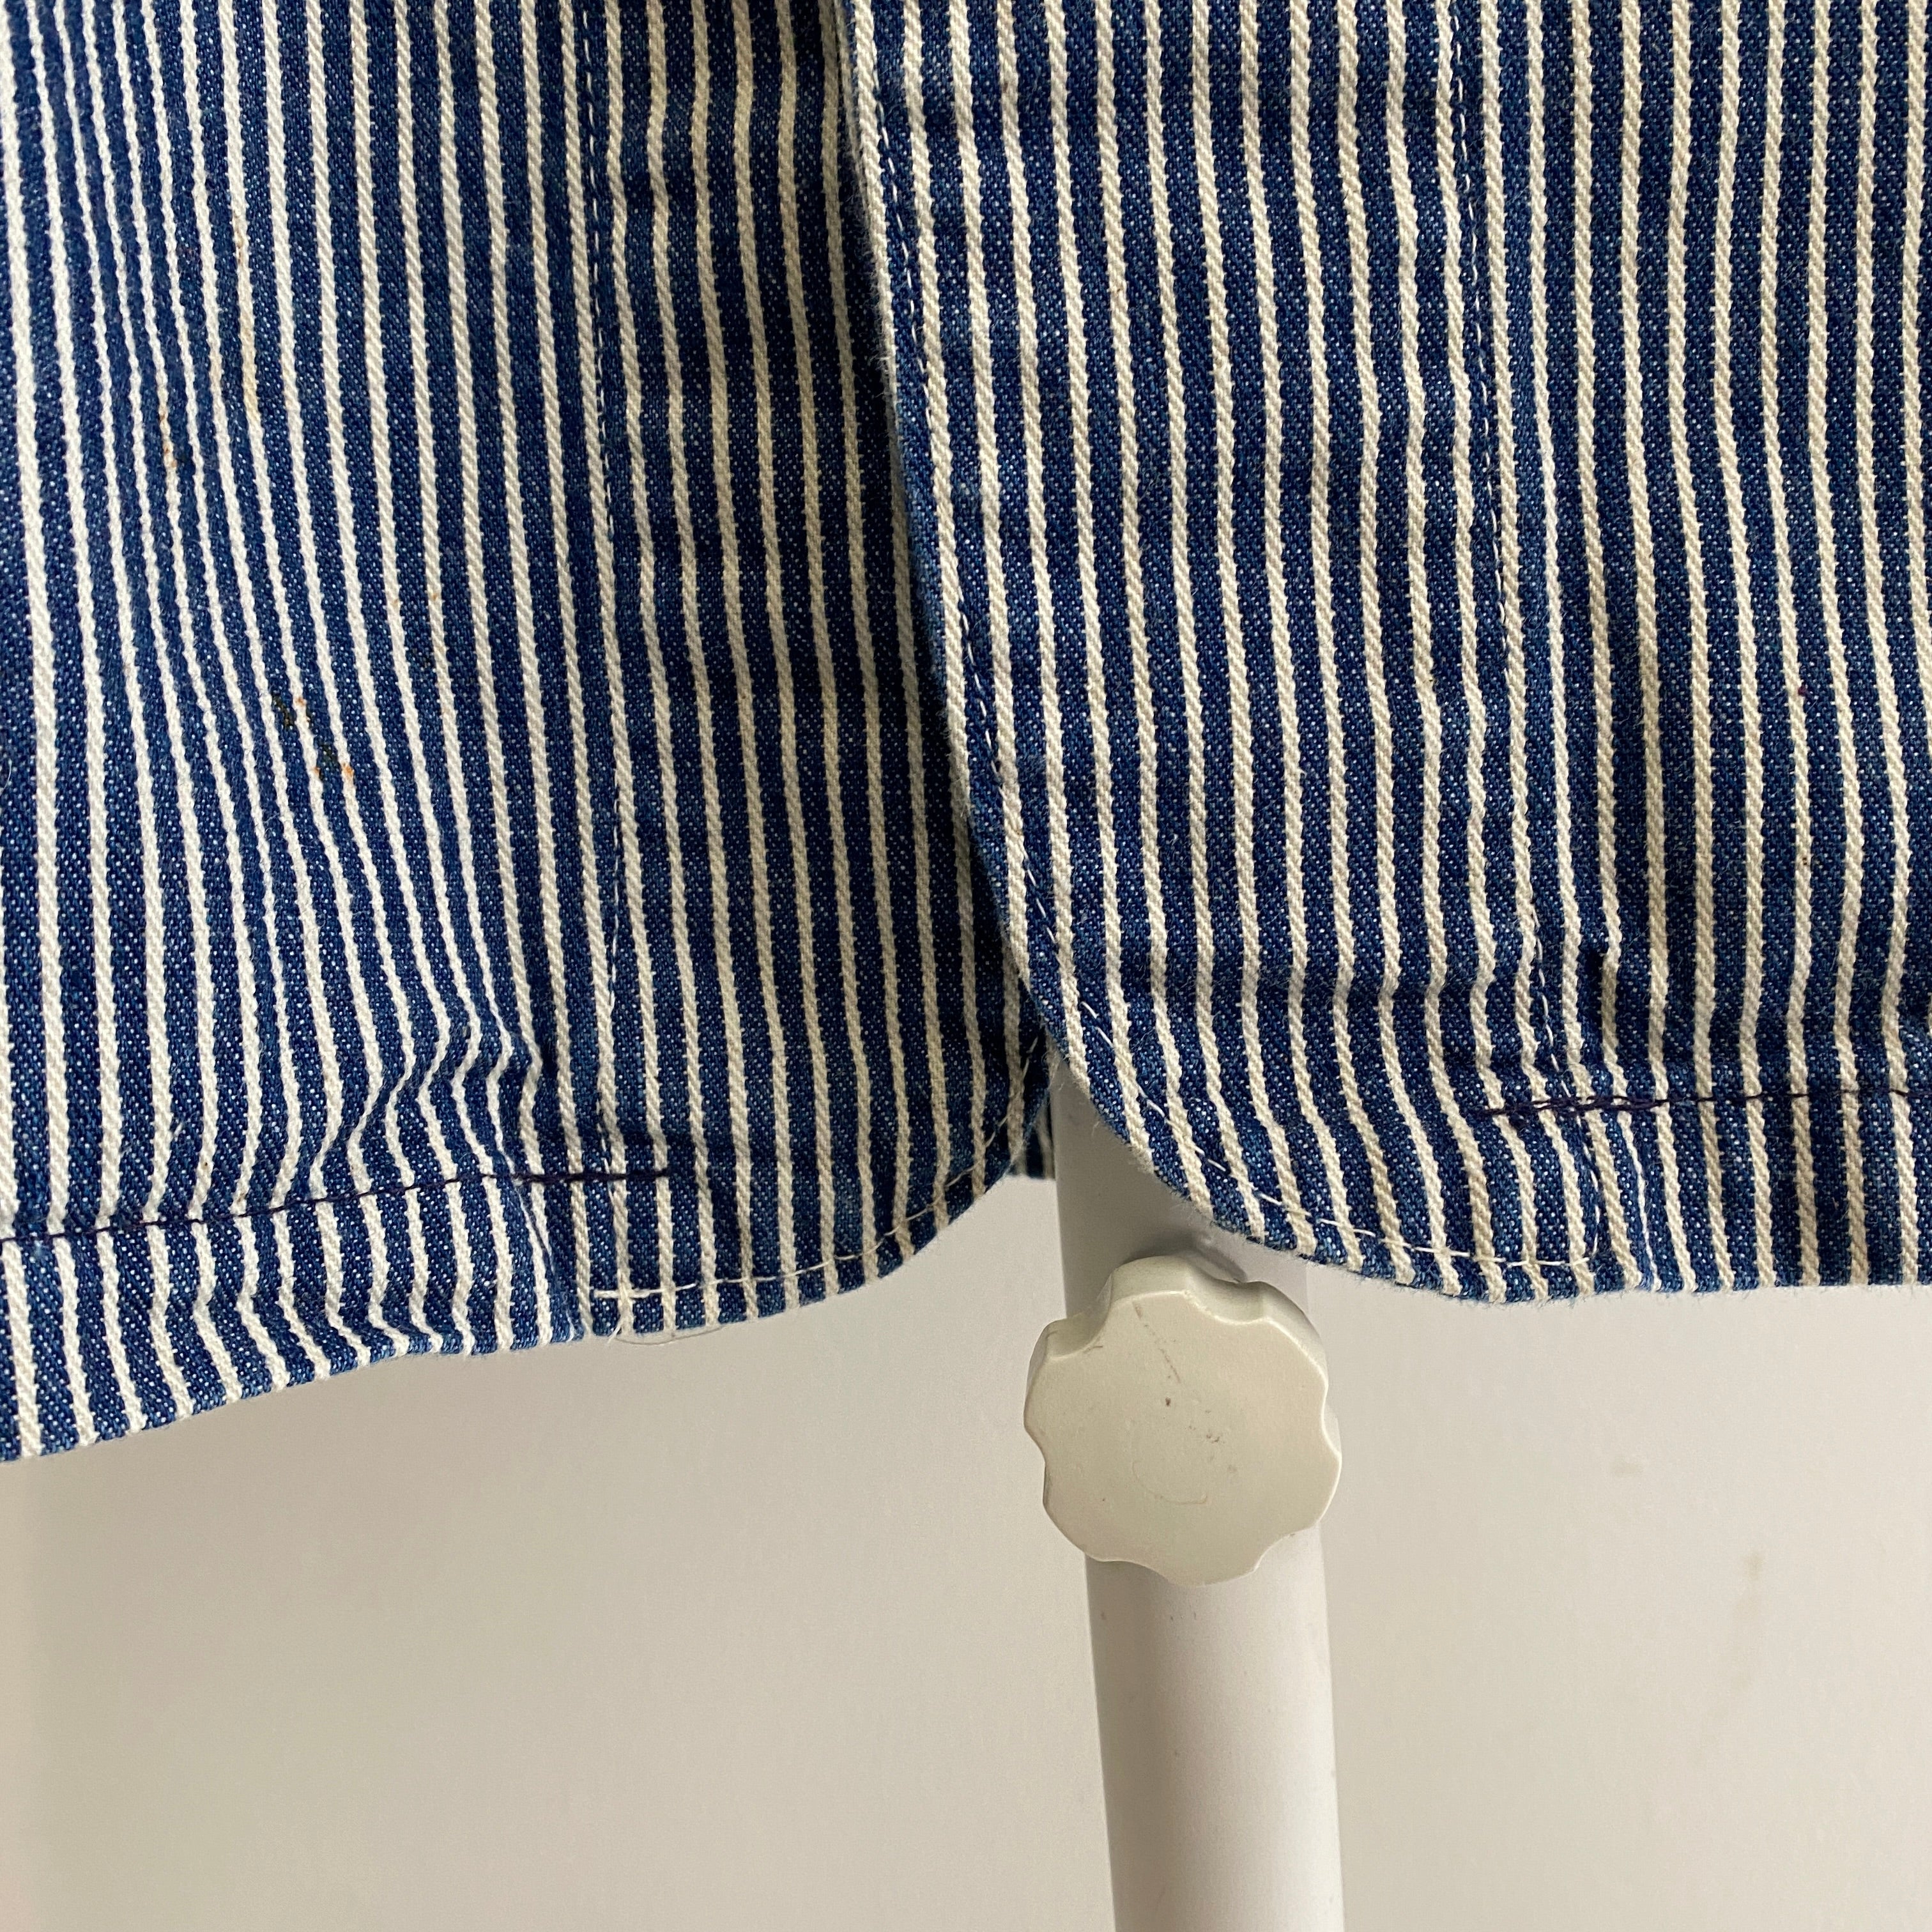 1980s OshKosh Hickory Striped Larger Sized Lightweight NOS Chore Coat